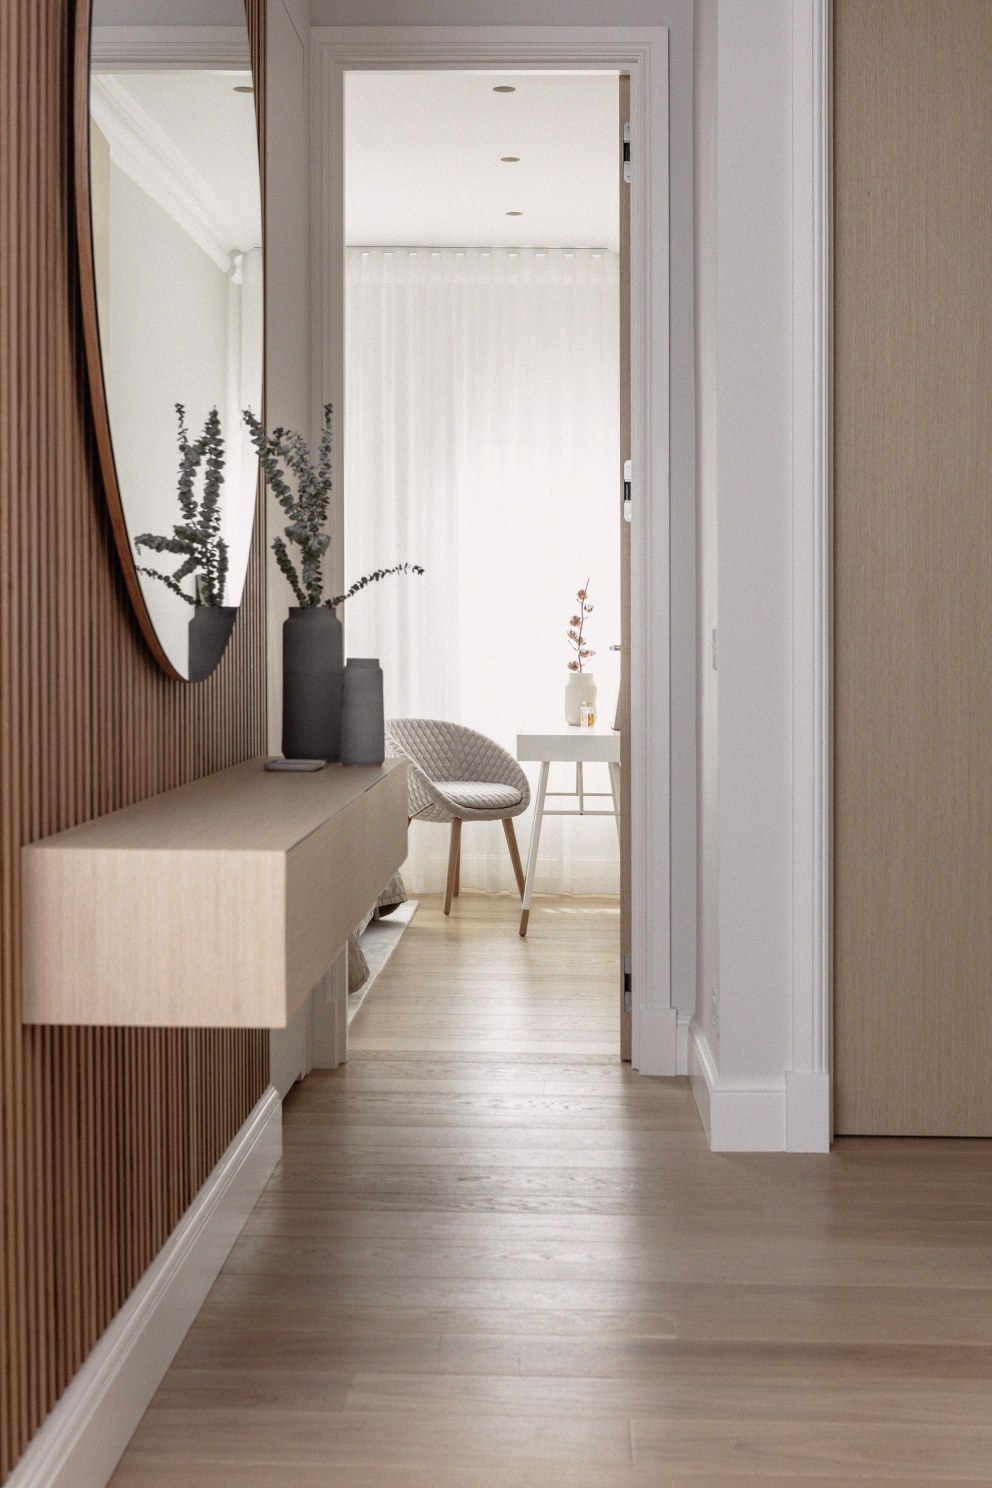 Chelsea - Refurbishment & FF&E | Bespoke cladding and mirror for entrance | Interior Designers